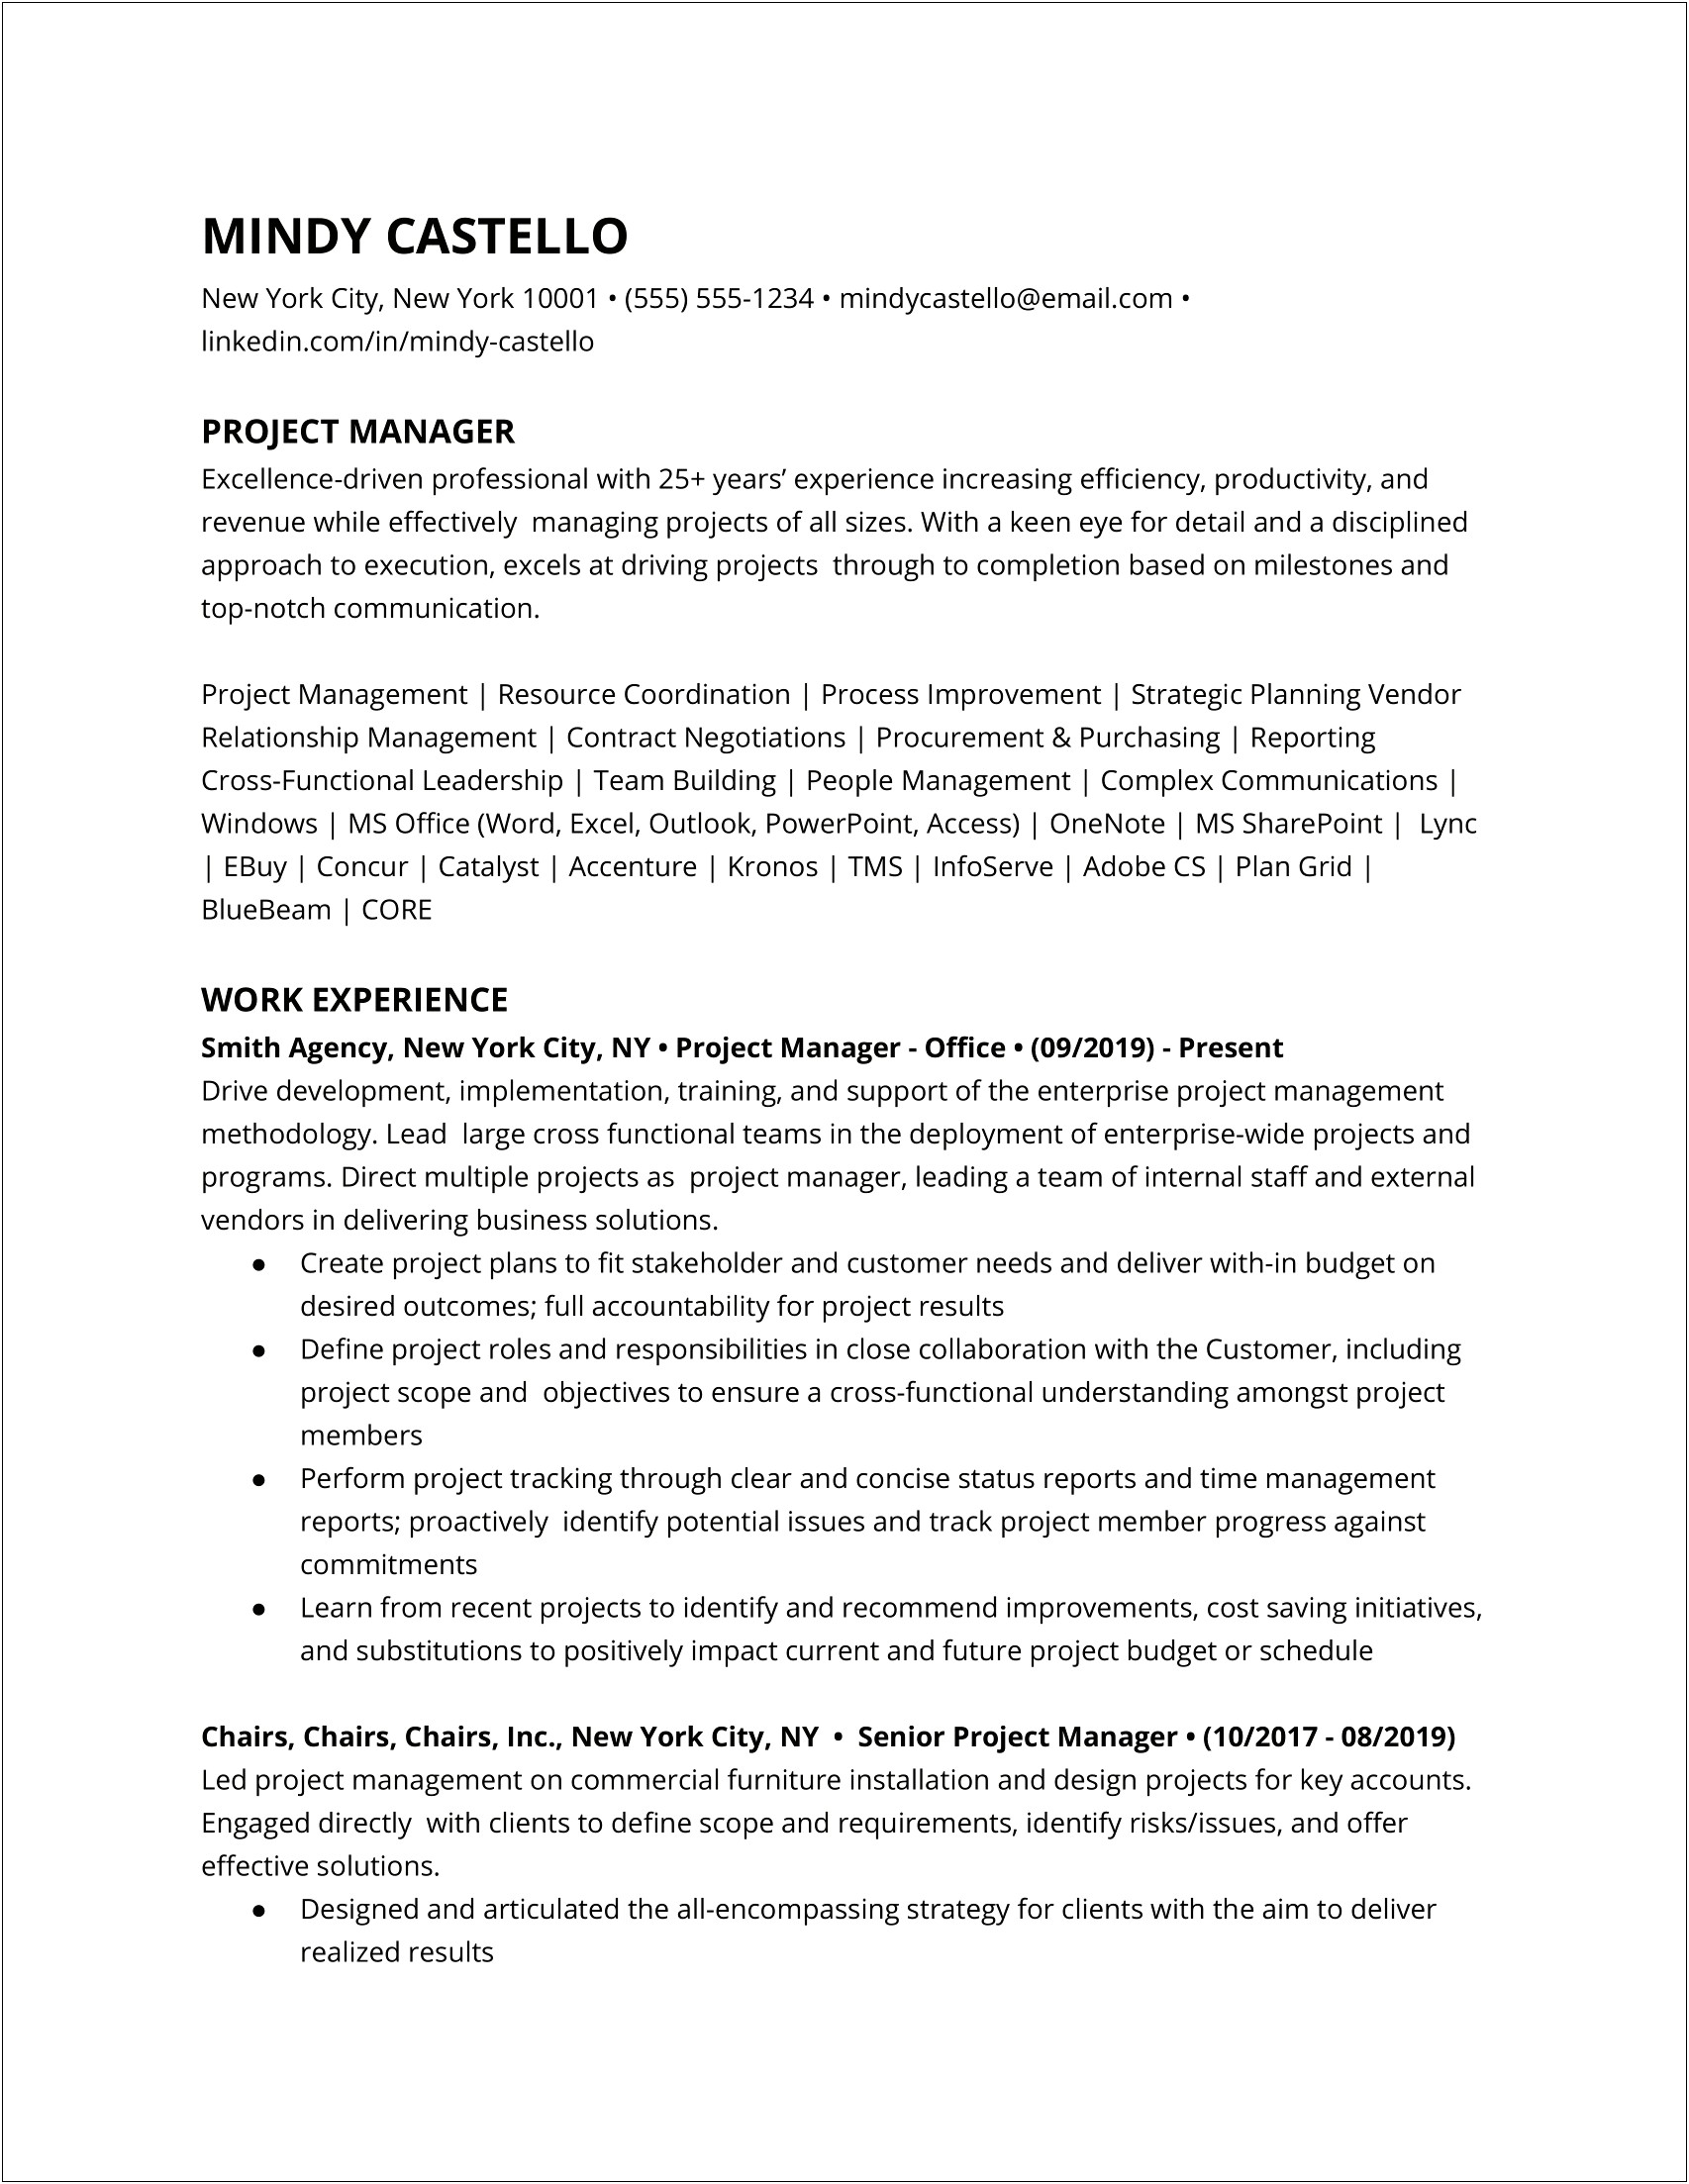 Project Management Art Job Description Resume